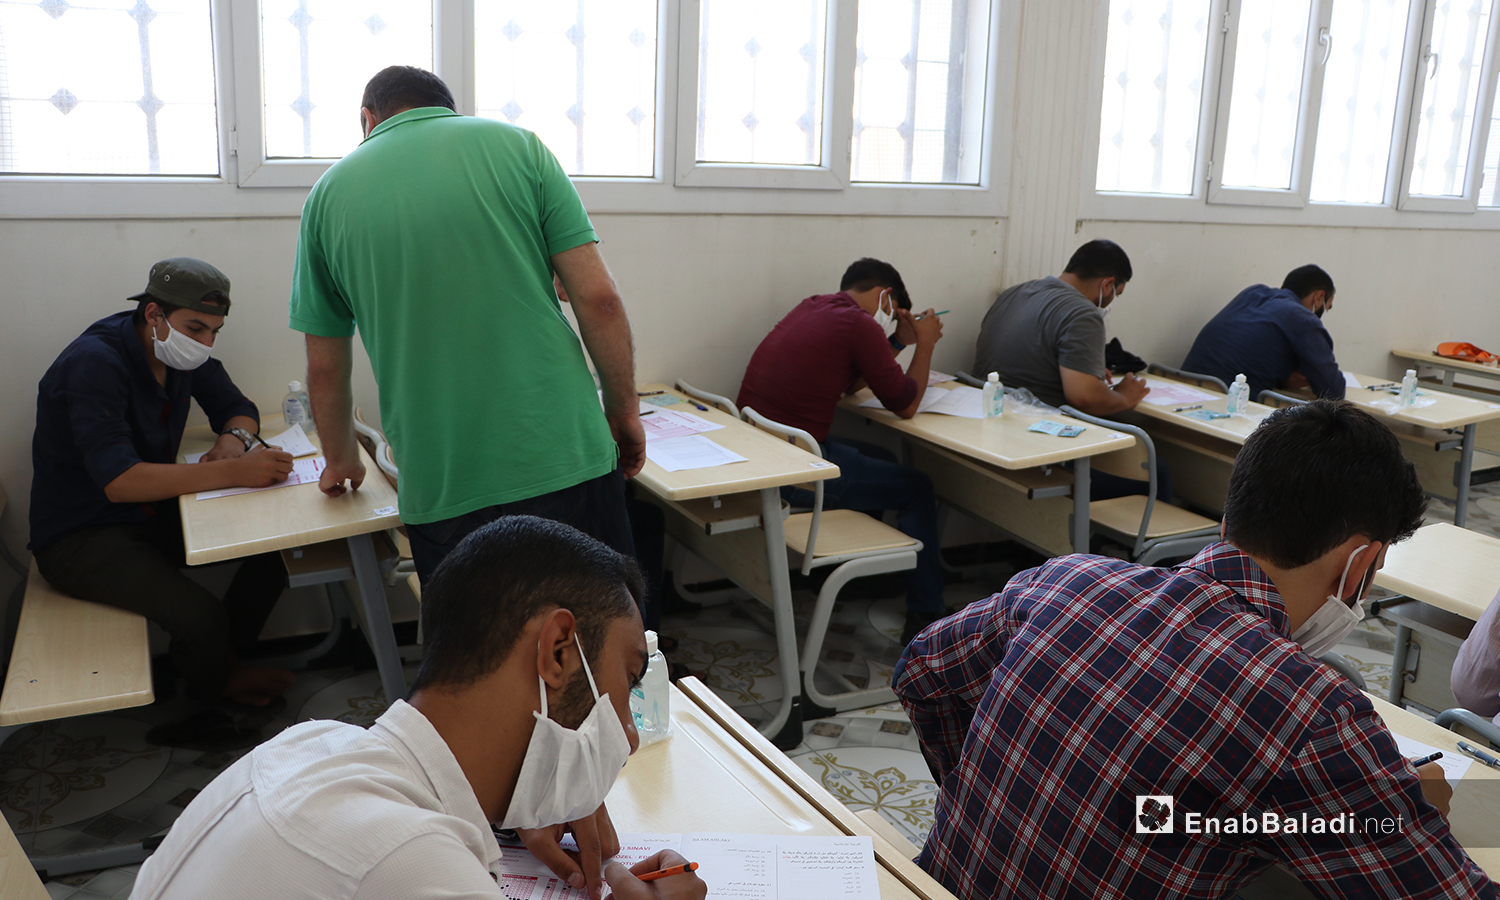 طلاب يقومون باجراء الامتحانات النهائية للشهادة الثانوية في ظل اجراءات الحماية من كورونا في مدينة الباب بريف حلب الشمالي - 12 من تموز 2020 (عنب بلدي / عاصم الملحم )